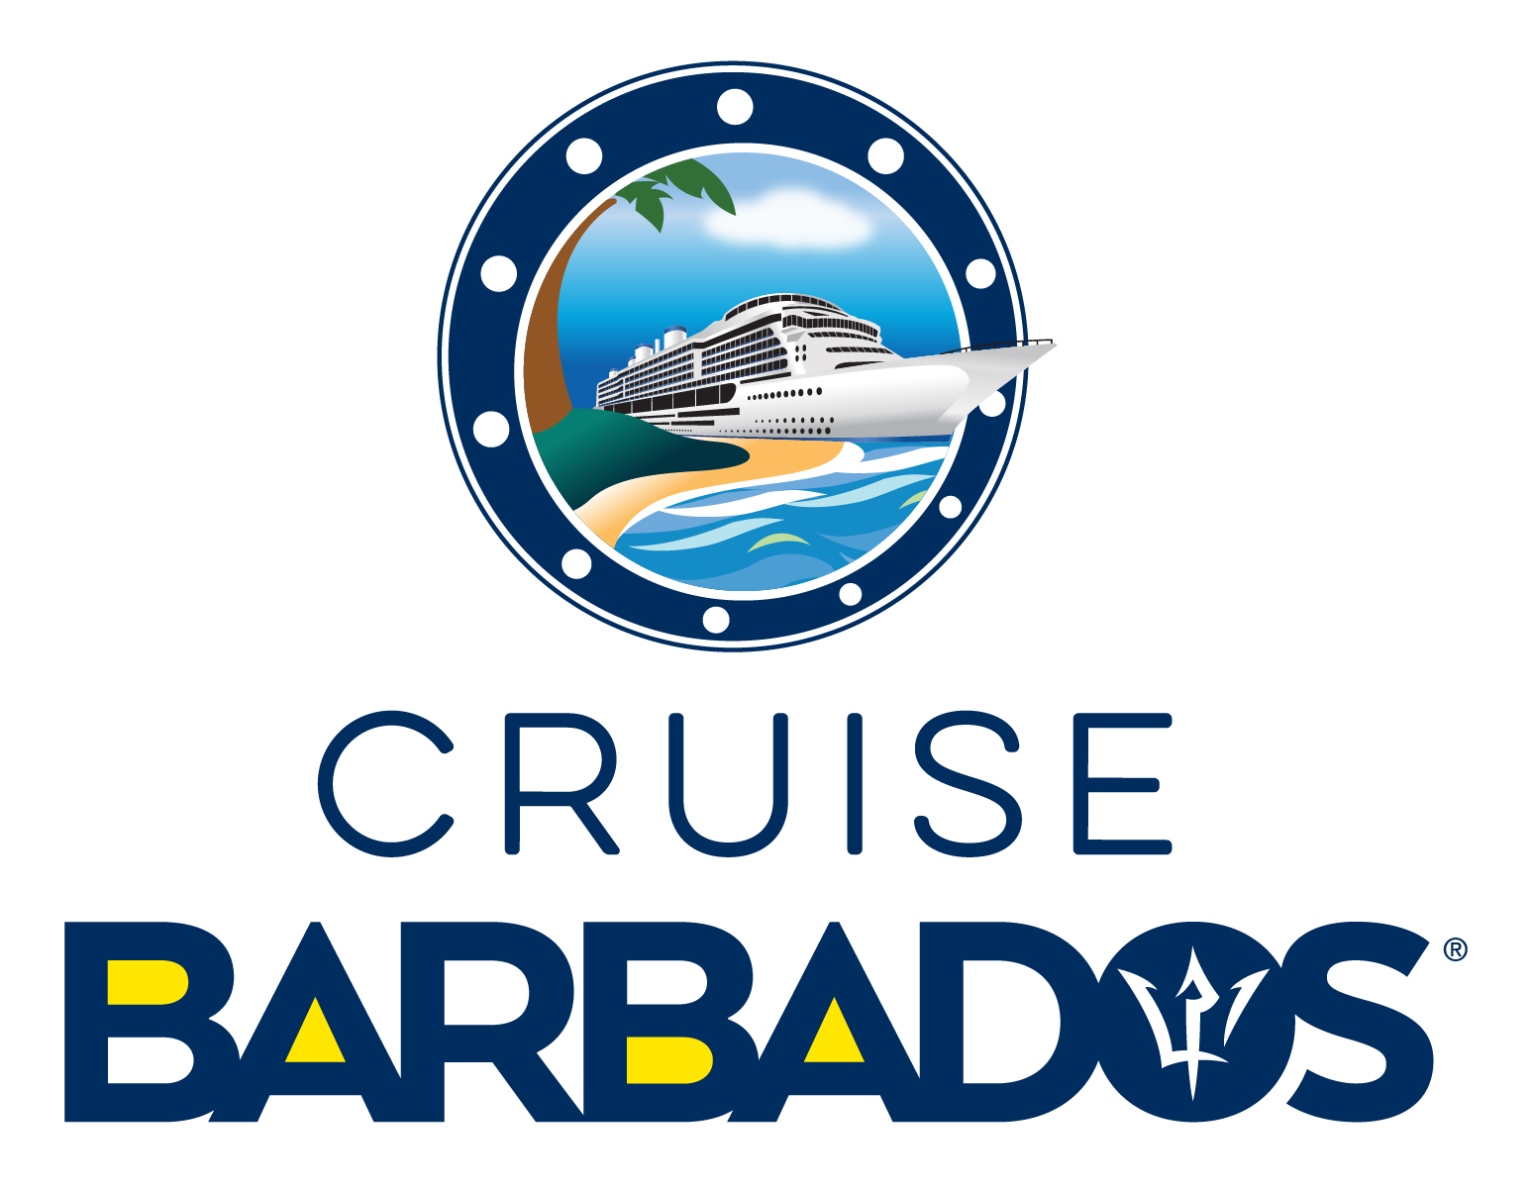 visit barbados logo